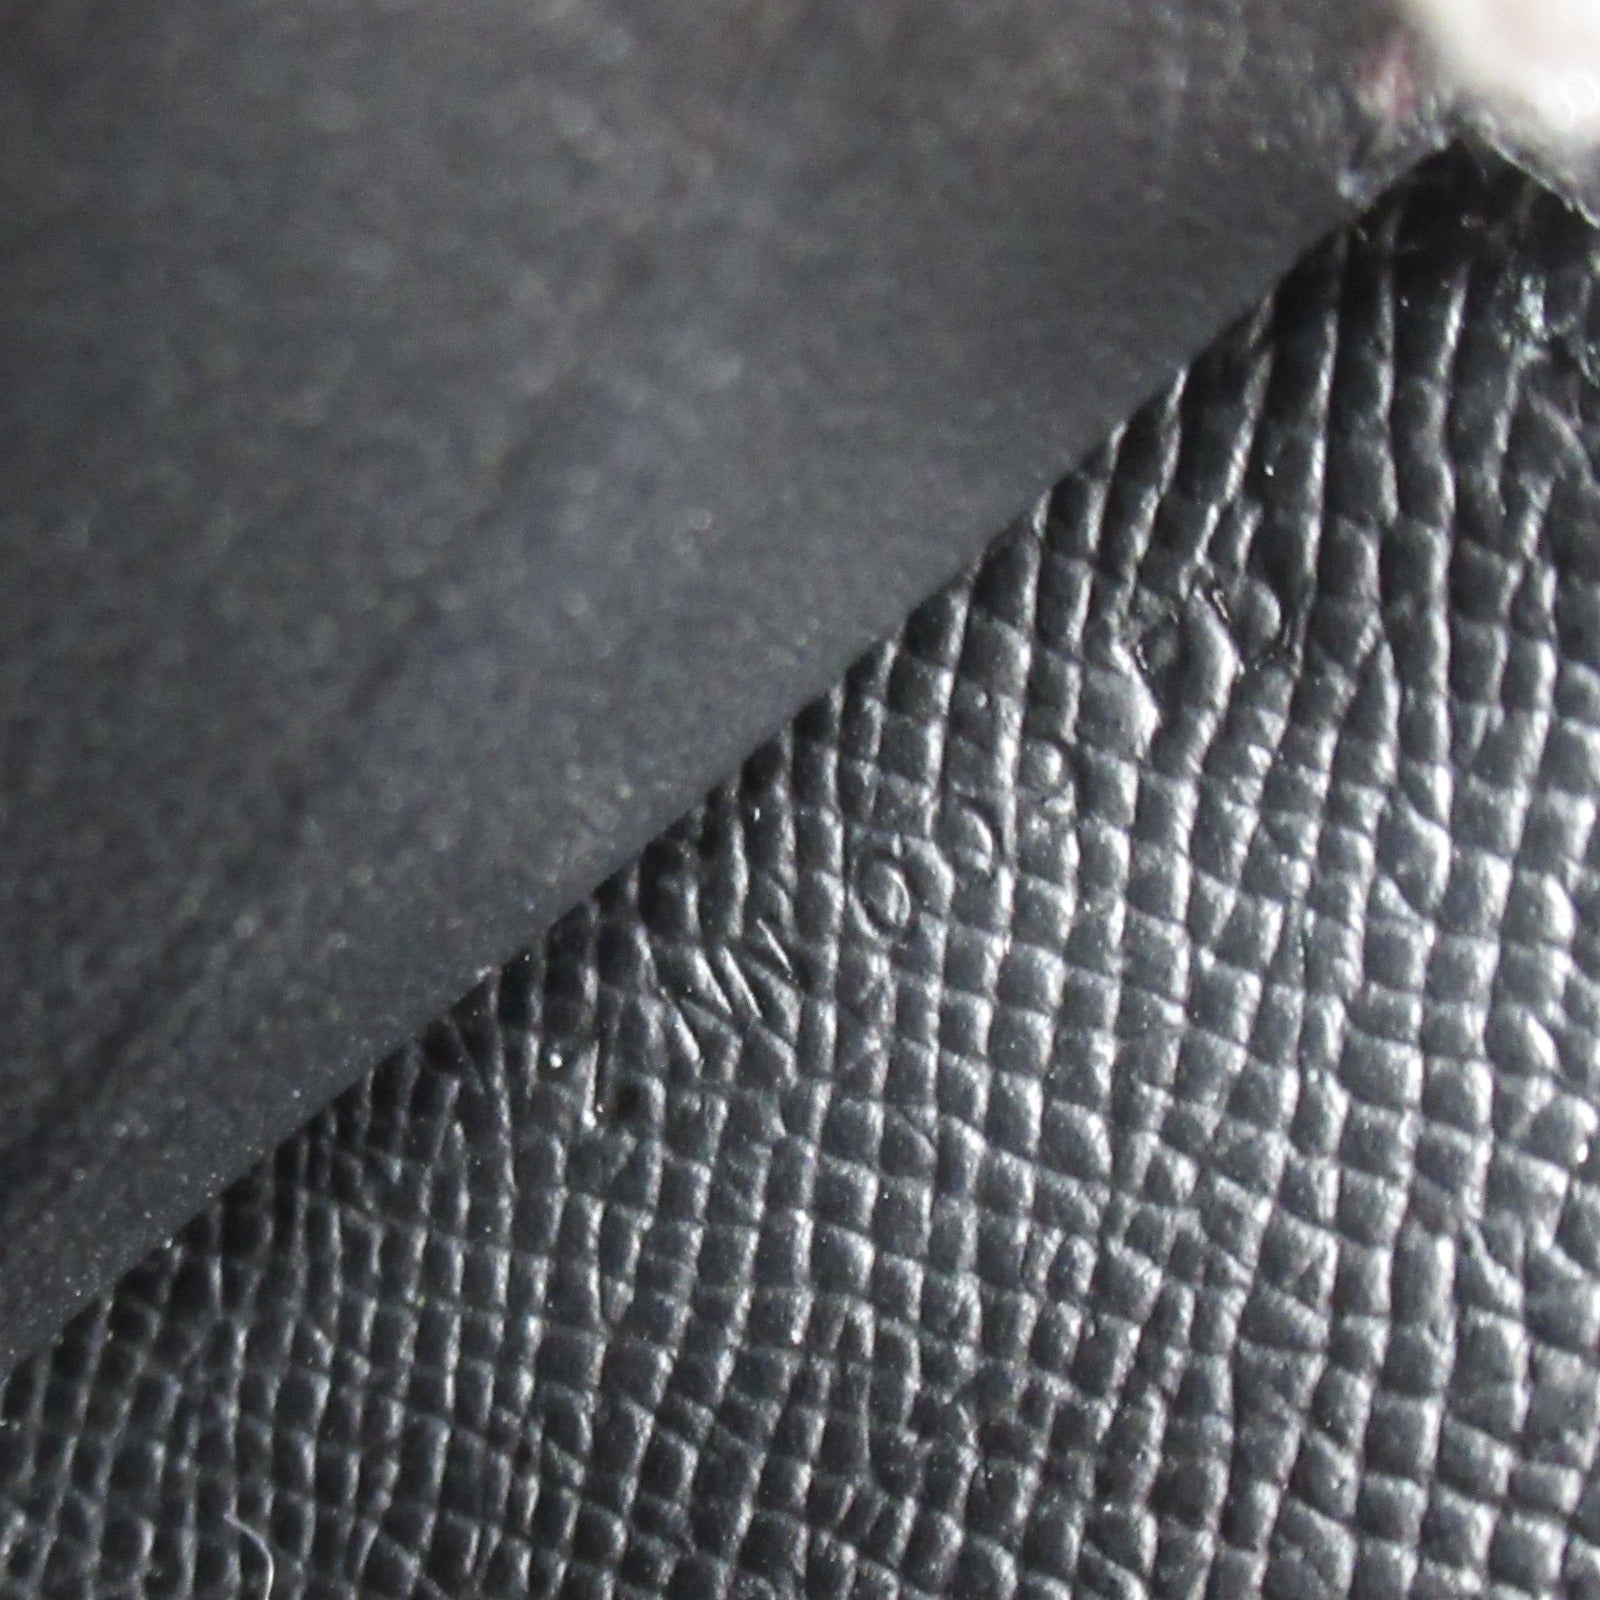 Hermes Hermes Kelly Wallet Tougothouche Shoulder Bag Shoulder Bag  Press Leather Epsom/Alligator  Black  【Ancestral】 VANDANDOFF